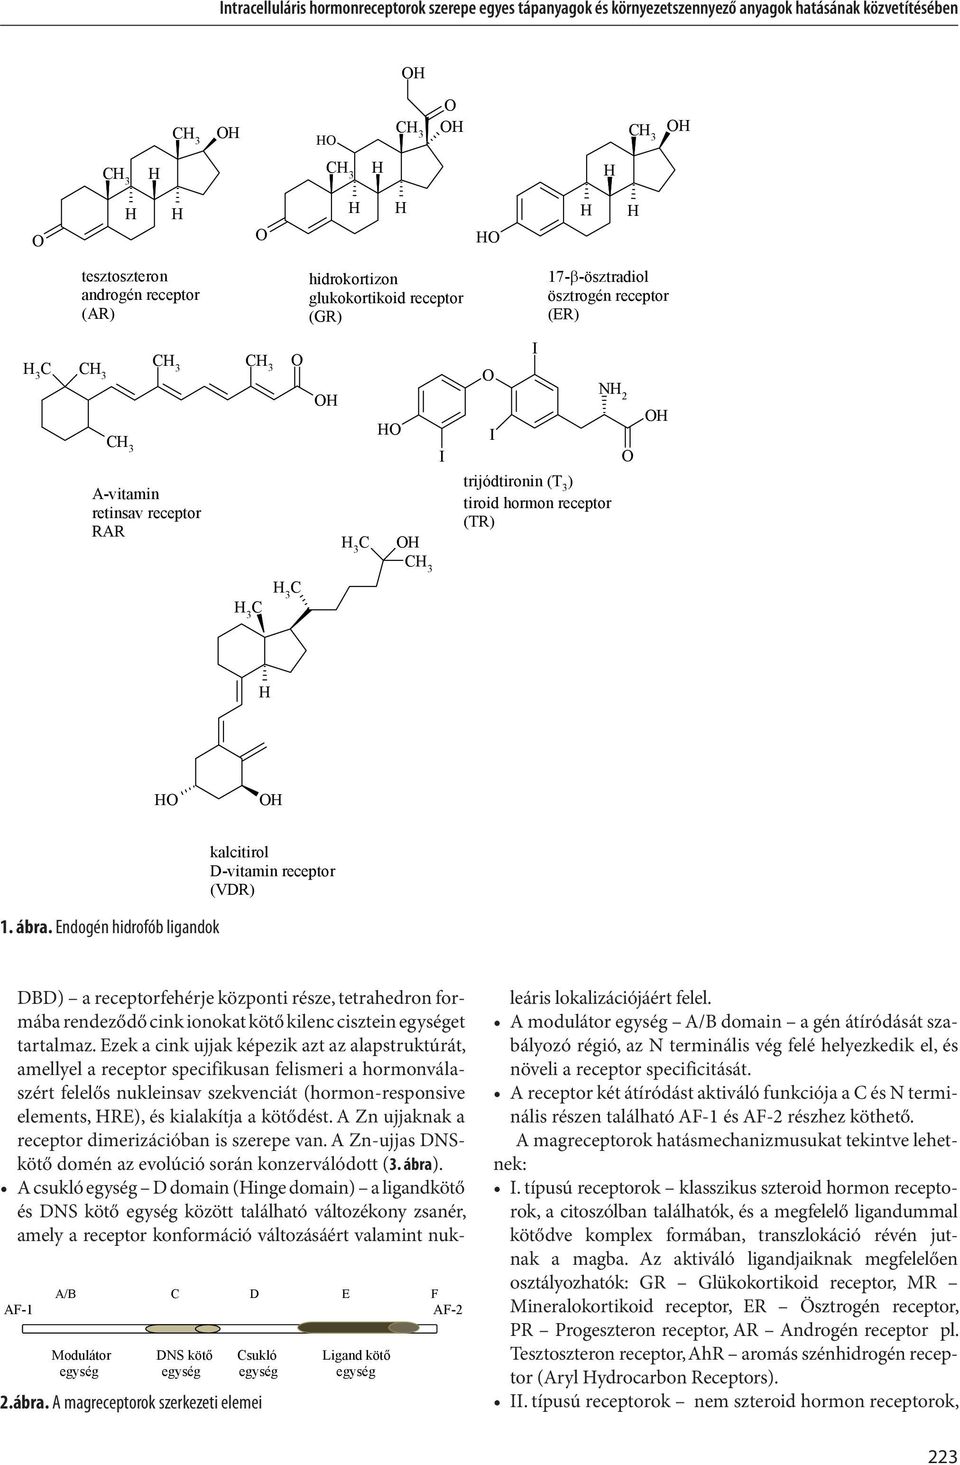 Endogén hidrofób ligandok kalcitirol D-vitamin receptor (VDR) AF-1 A/B C D E F AF-2 Modulátor DNS köt Csukló Ligand köt egység egység egység egység 2.ábra.